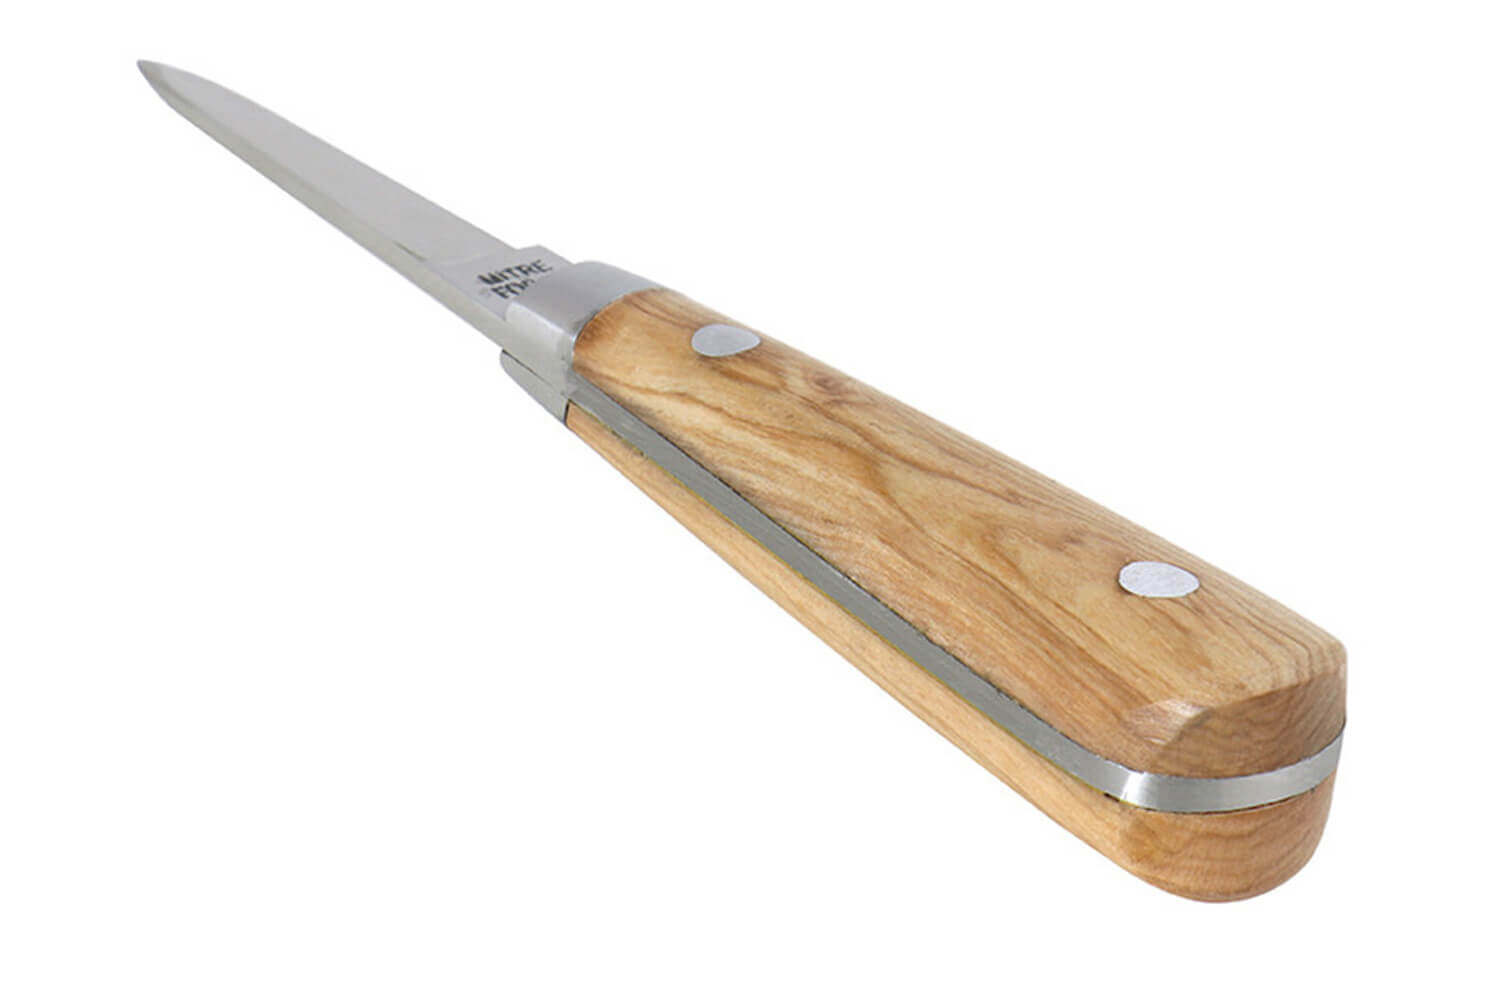 Couteau huitre Laguiole,avec sabot cale huitre et coffret bois